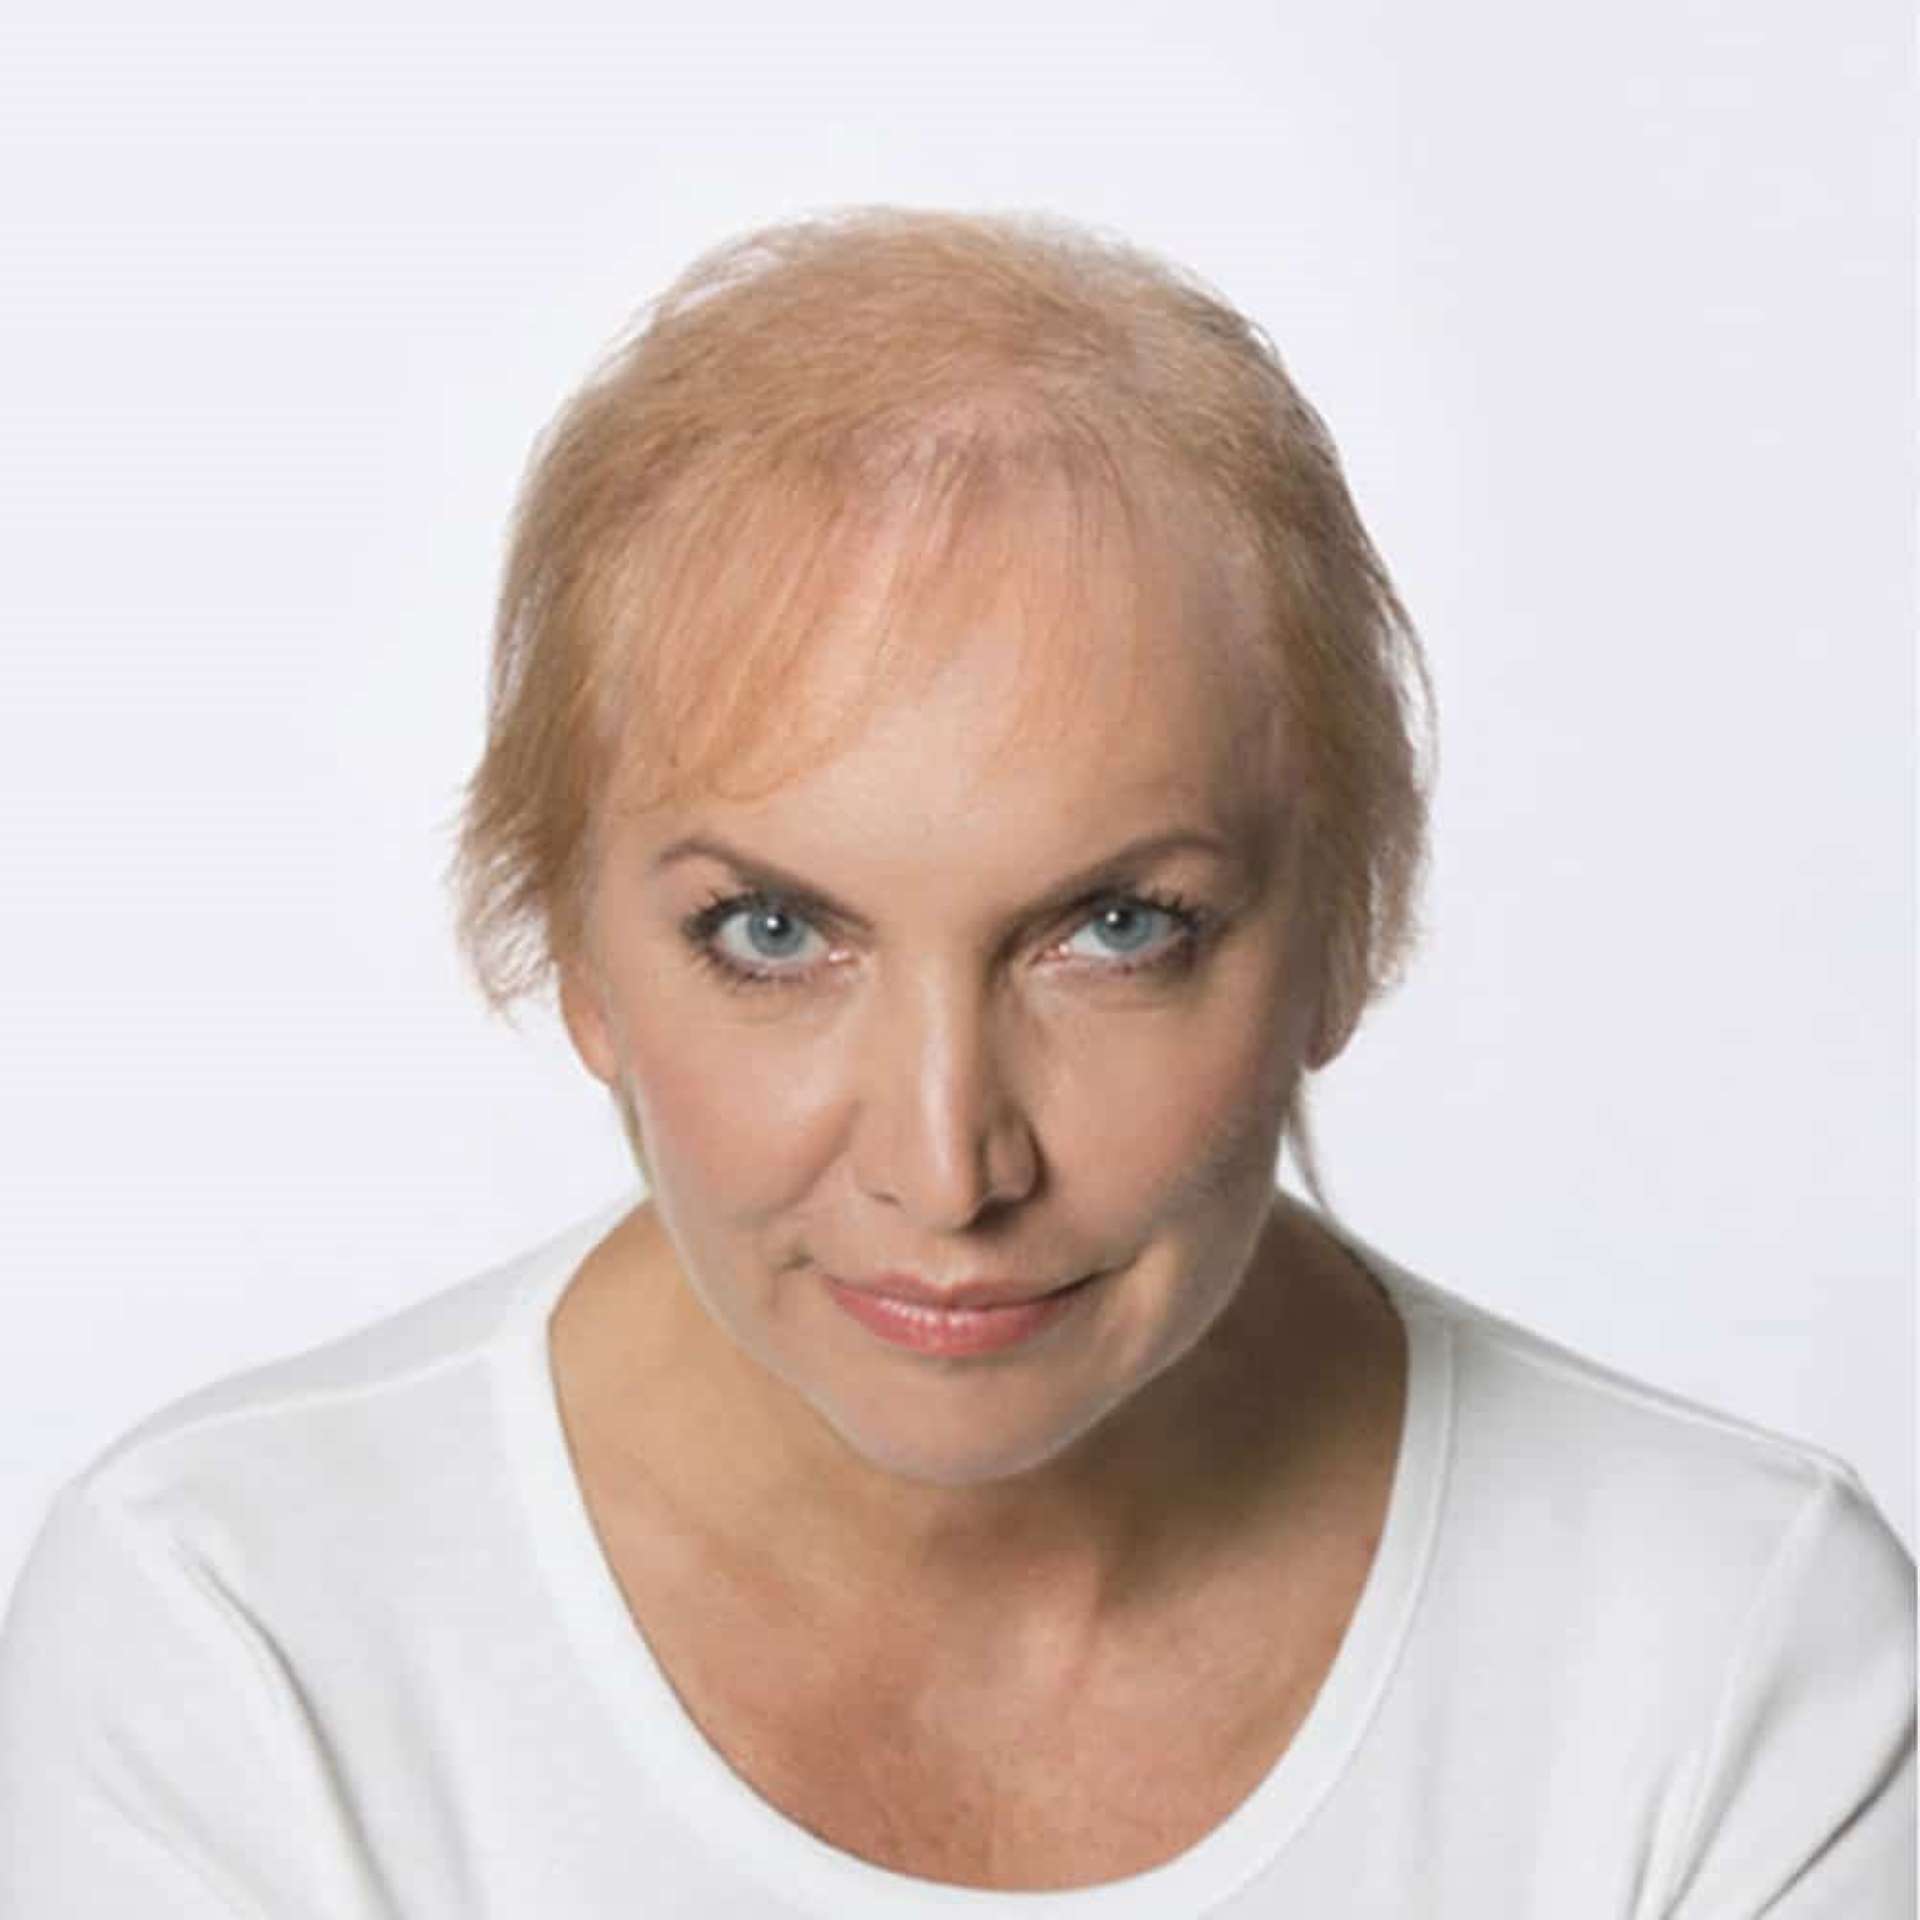 Frau mit wenig blonden Haaren am Kopf